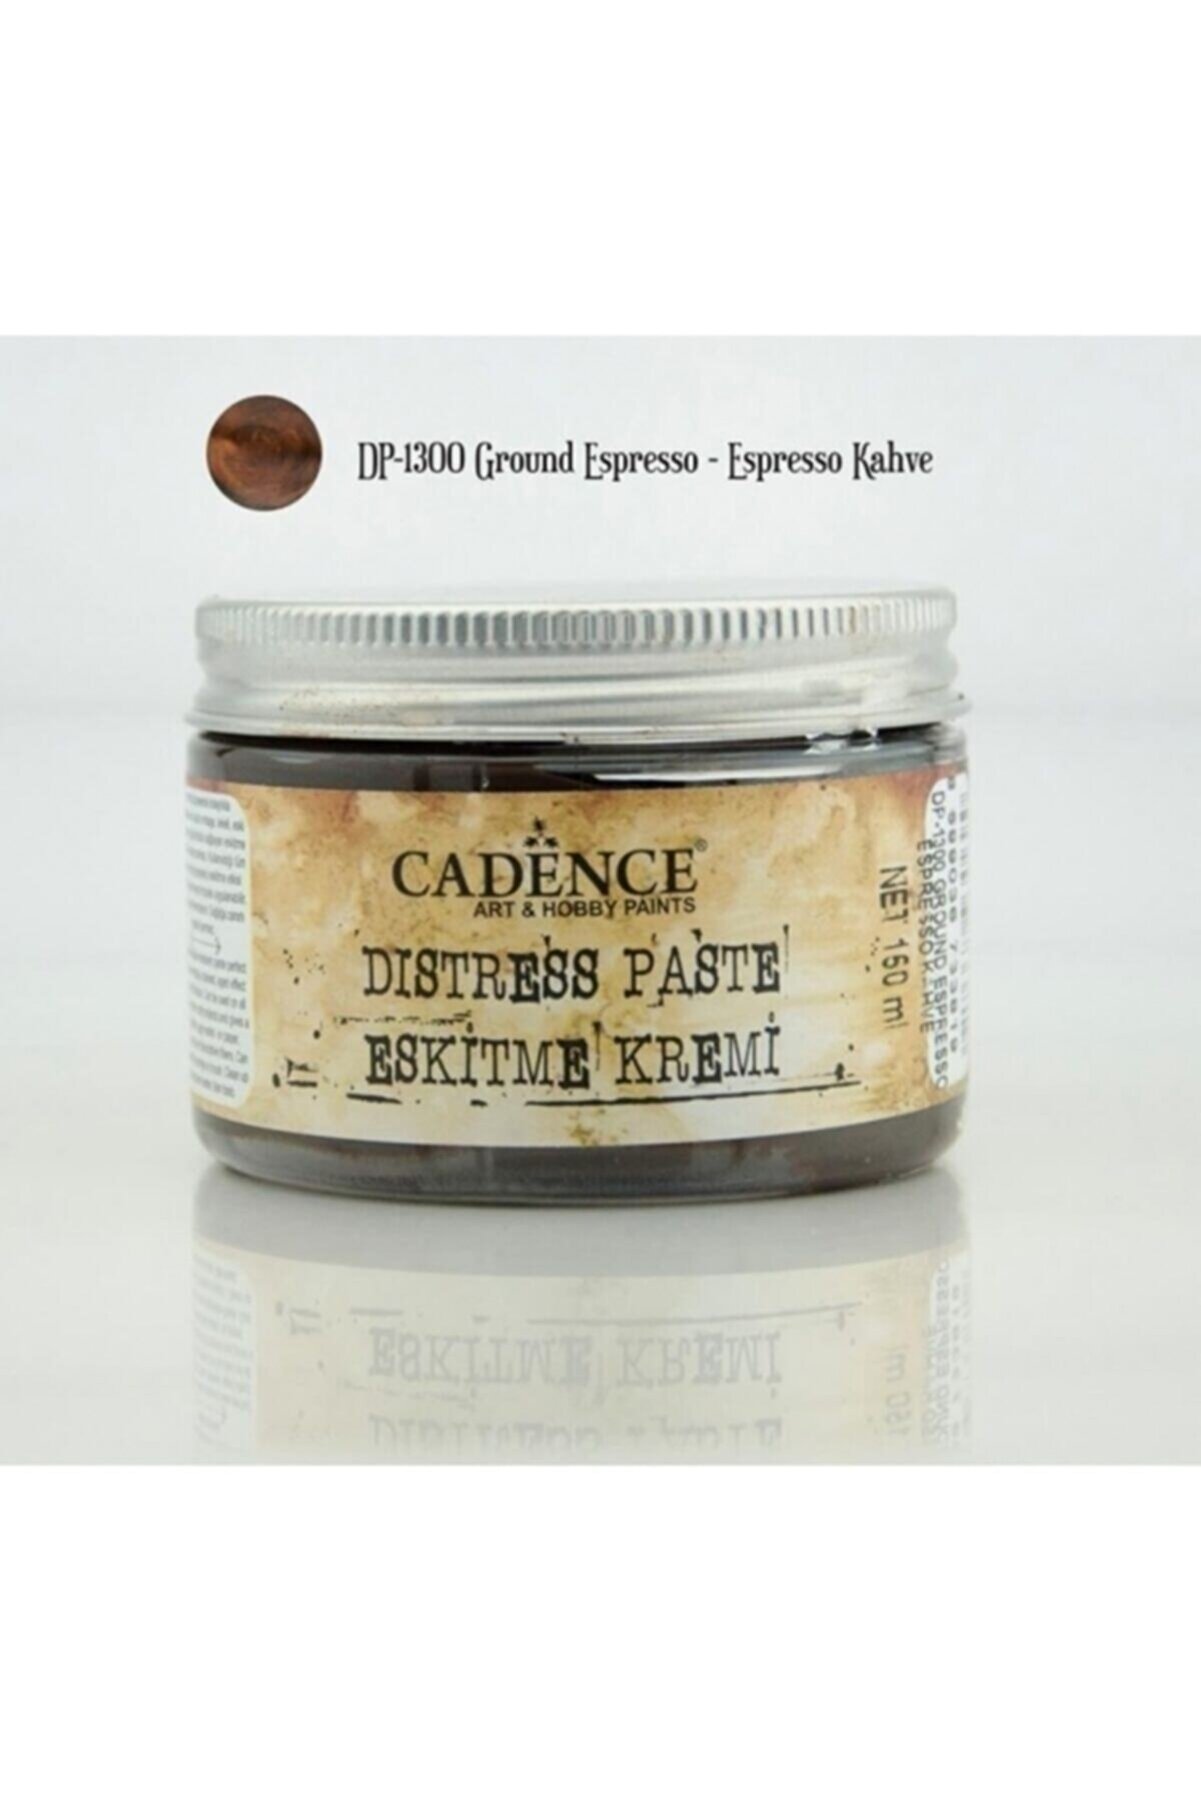 Cadence Dp1300 Espresso Kahve - Eskitme Kremi